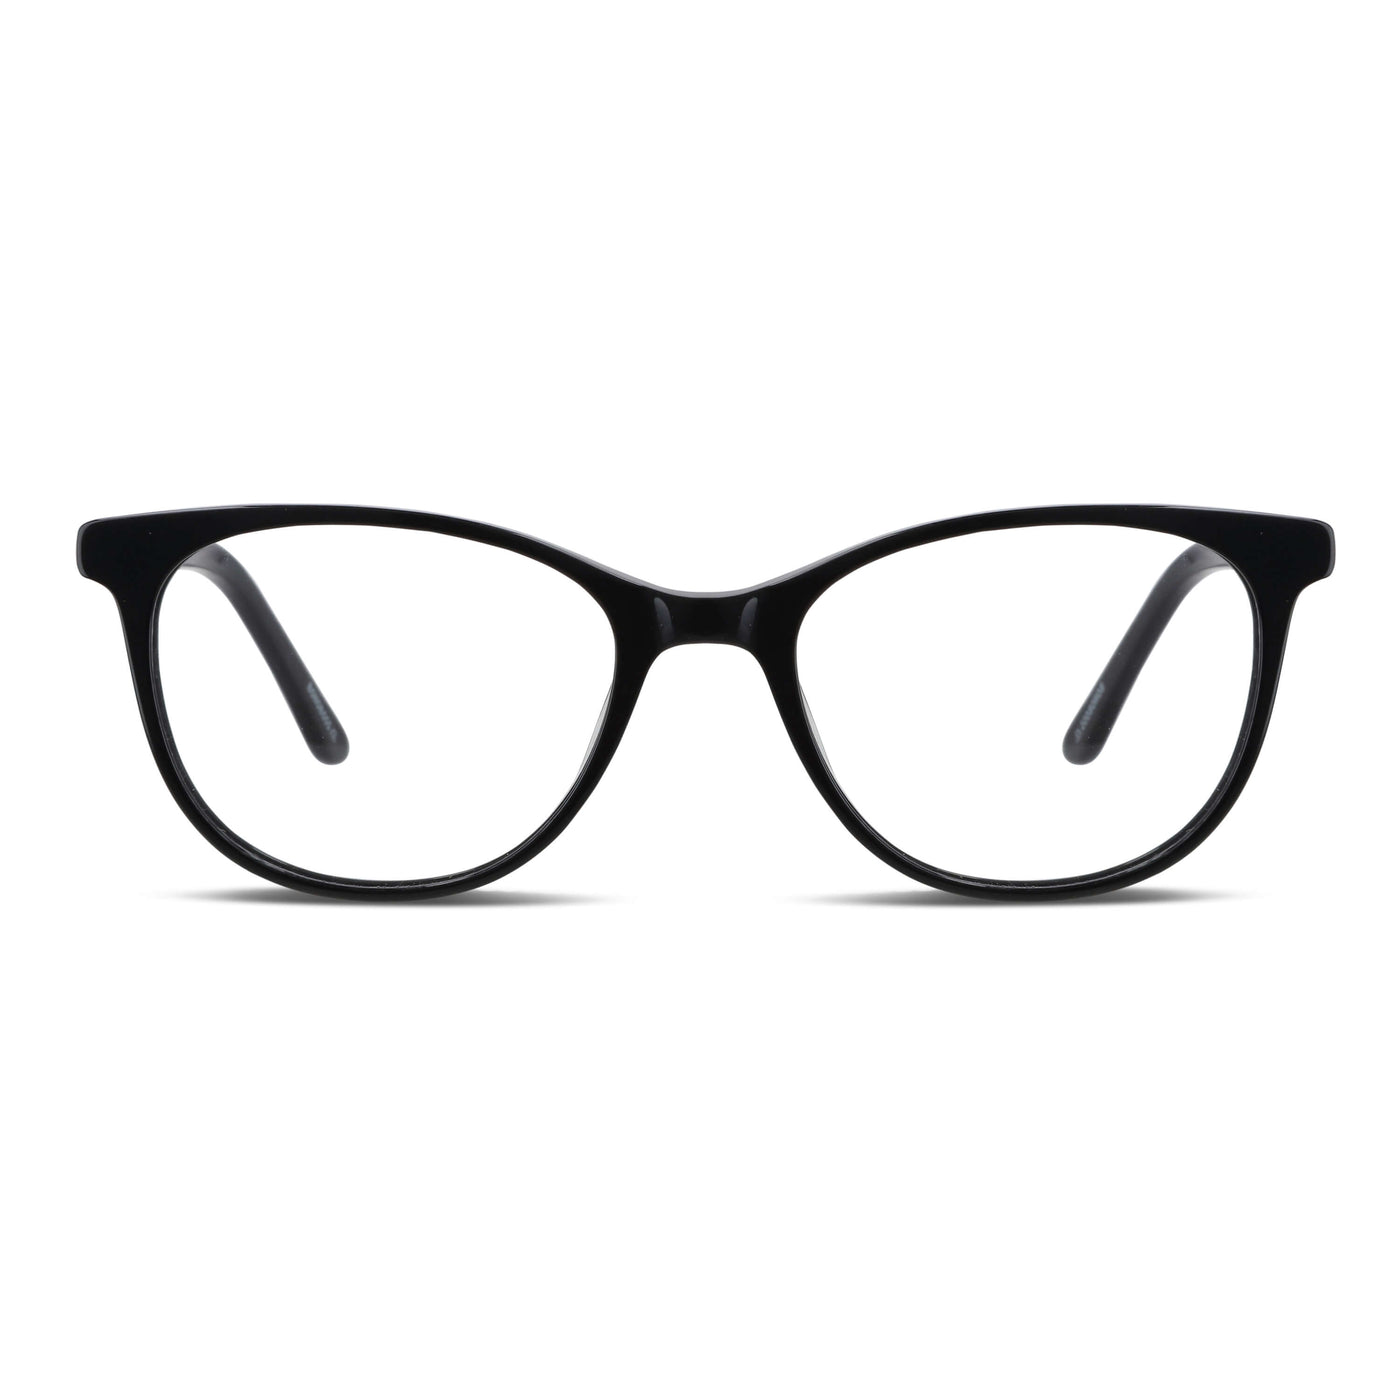  lentes agatados negros mujer cara redonda opticos multifocales bifocales receta mayorista distribuidor.jpg